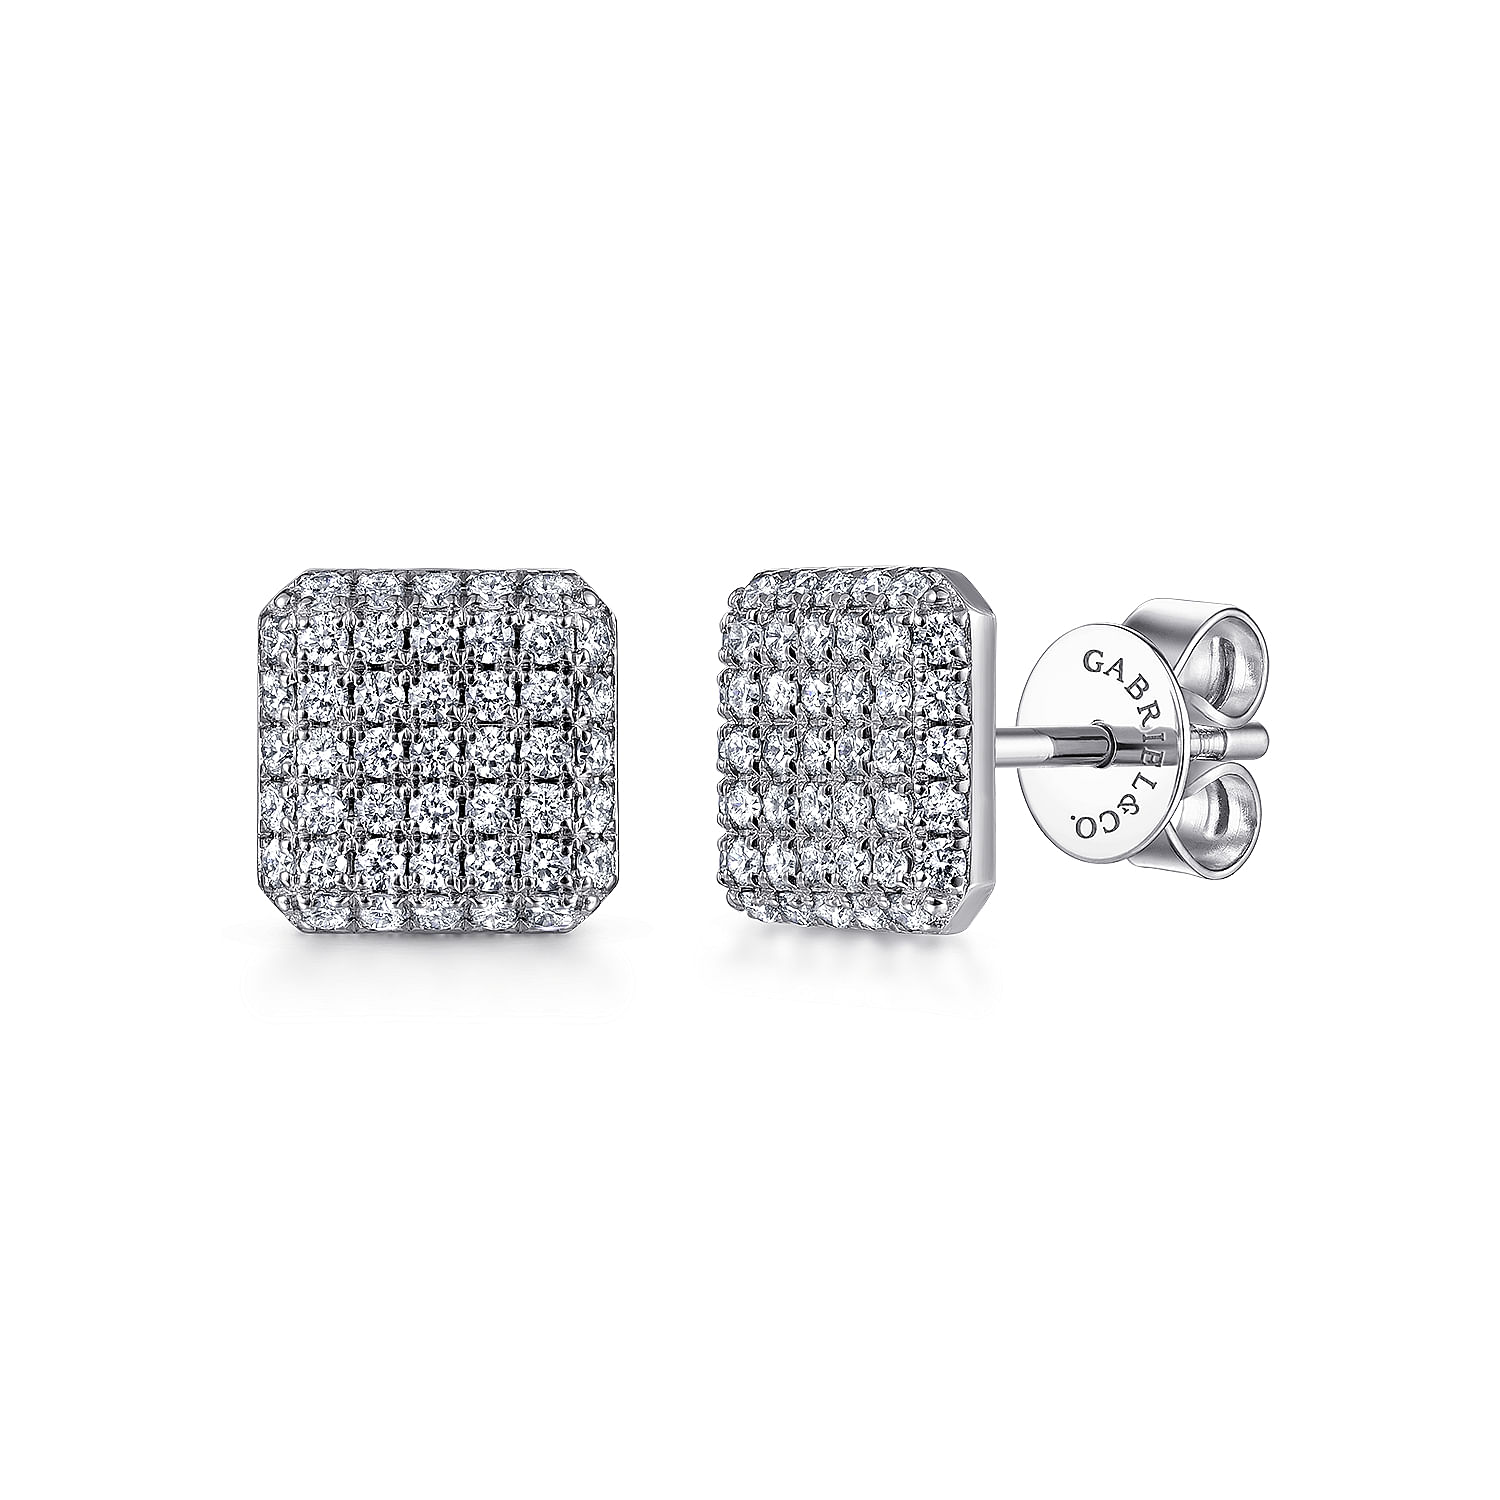 14K White Gold Cluster Square Diamond Stud Earrings